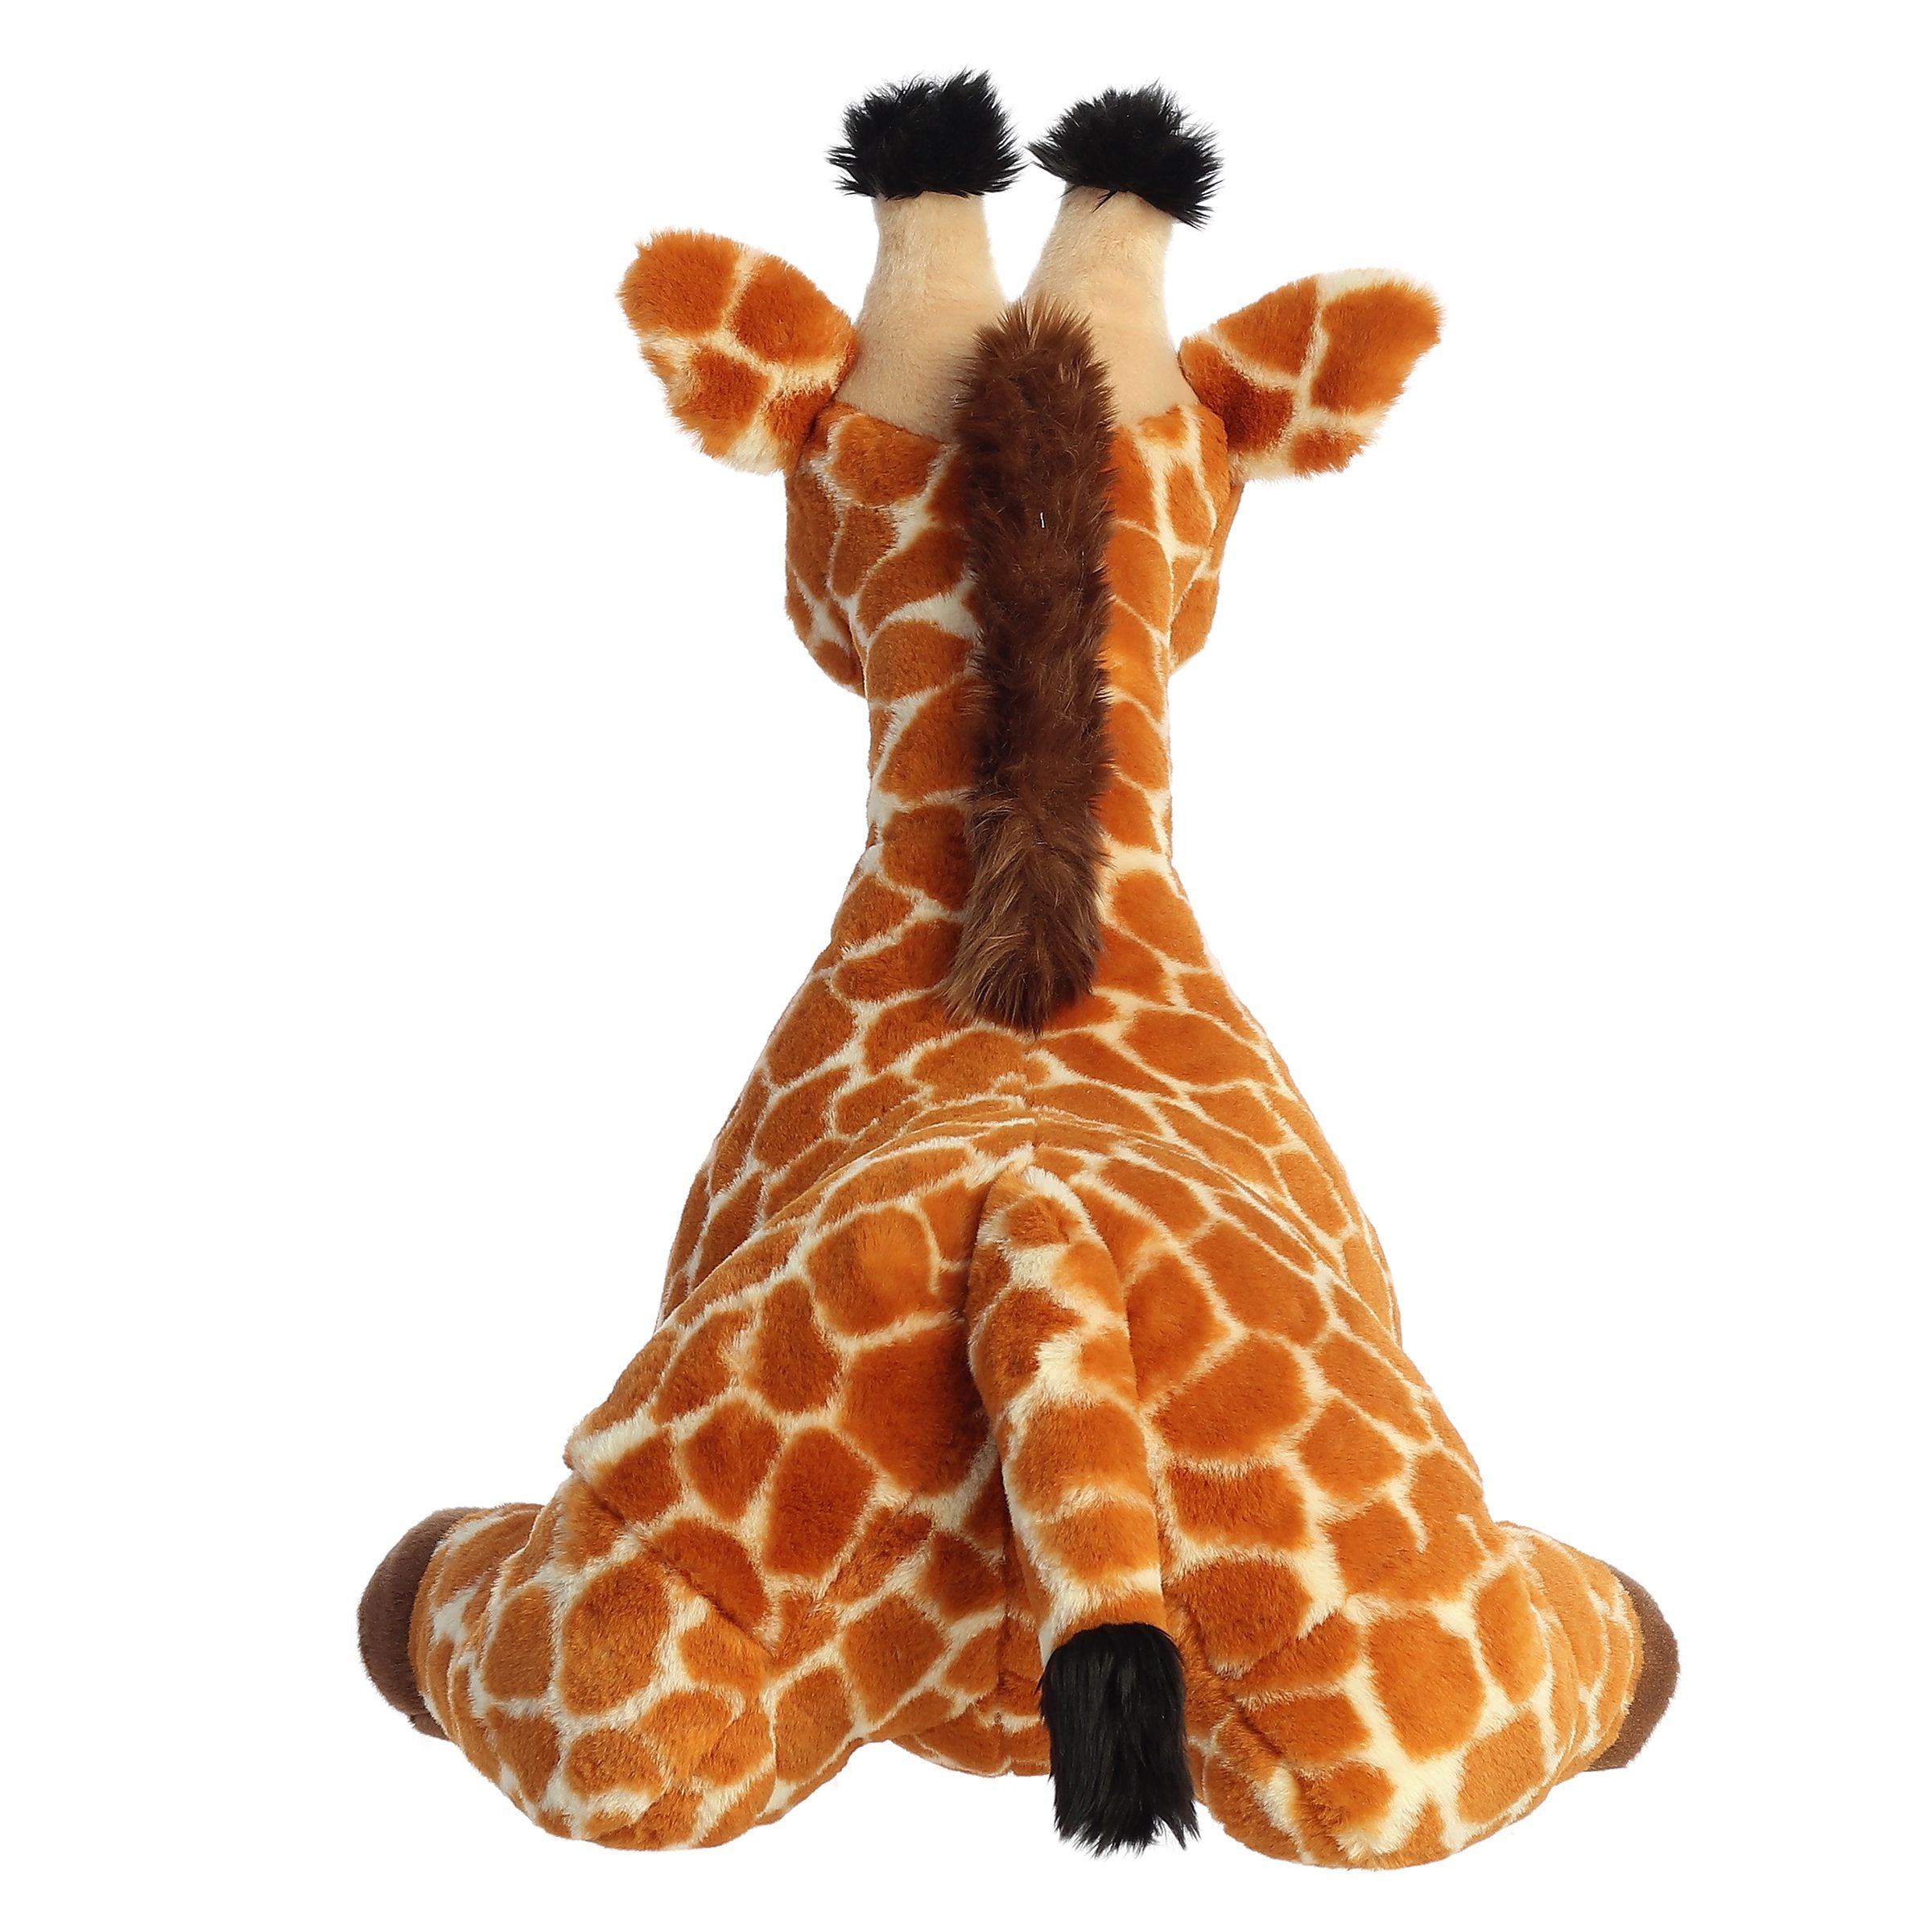 Plush & Trendy Dog Toys, Gigi Giraffe